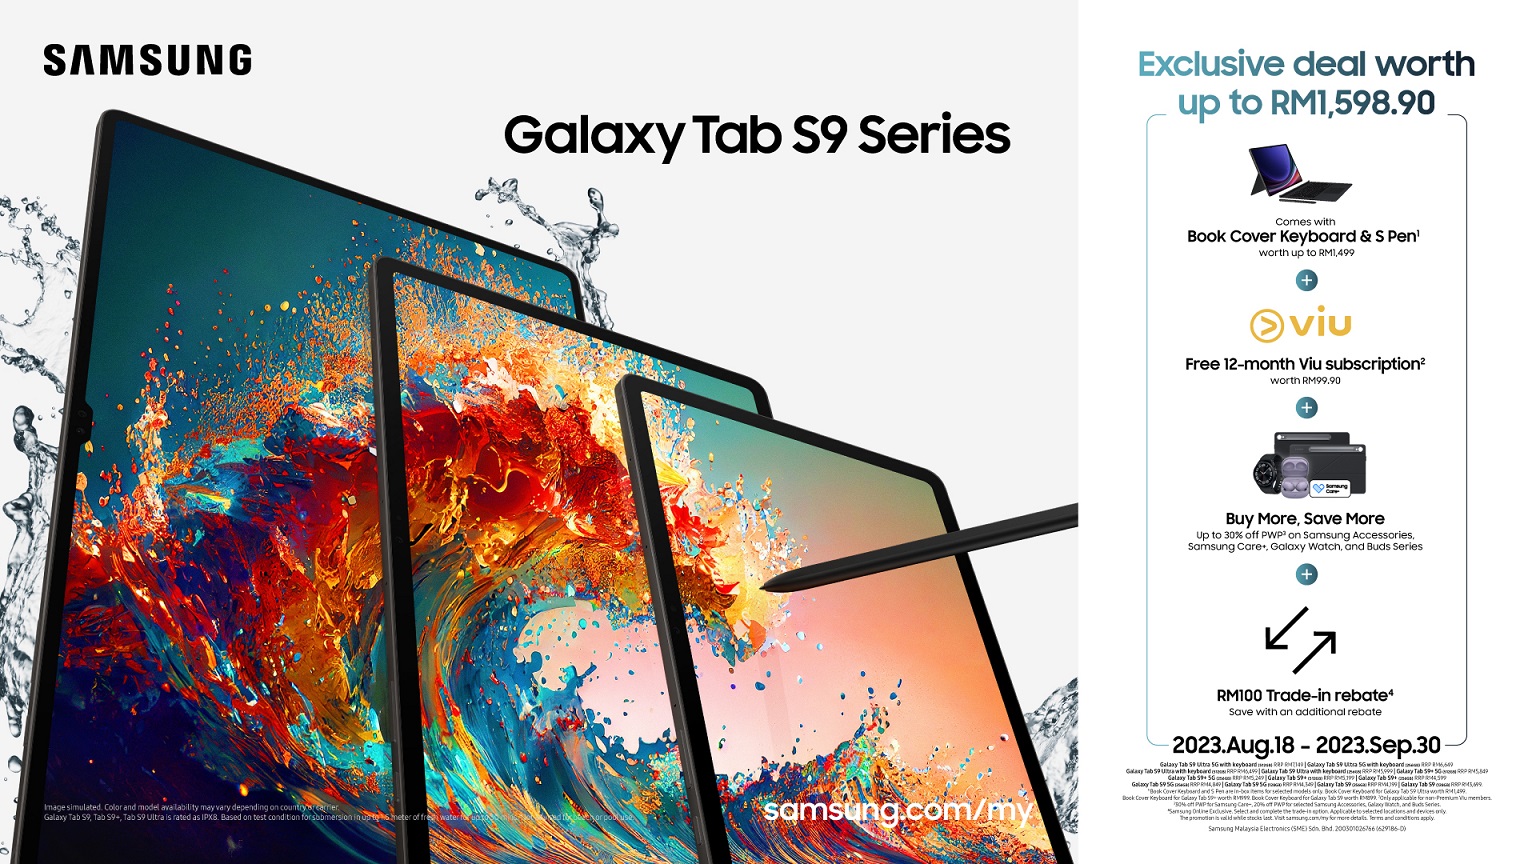 大小適中、頂級屏幕、最佳效率：五大特點讓 Samsung Galaxy Tab S9+ 能成為您工作與娛樂的最佳夥伴！ 25